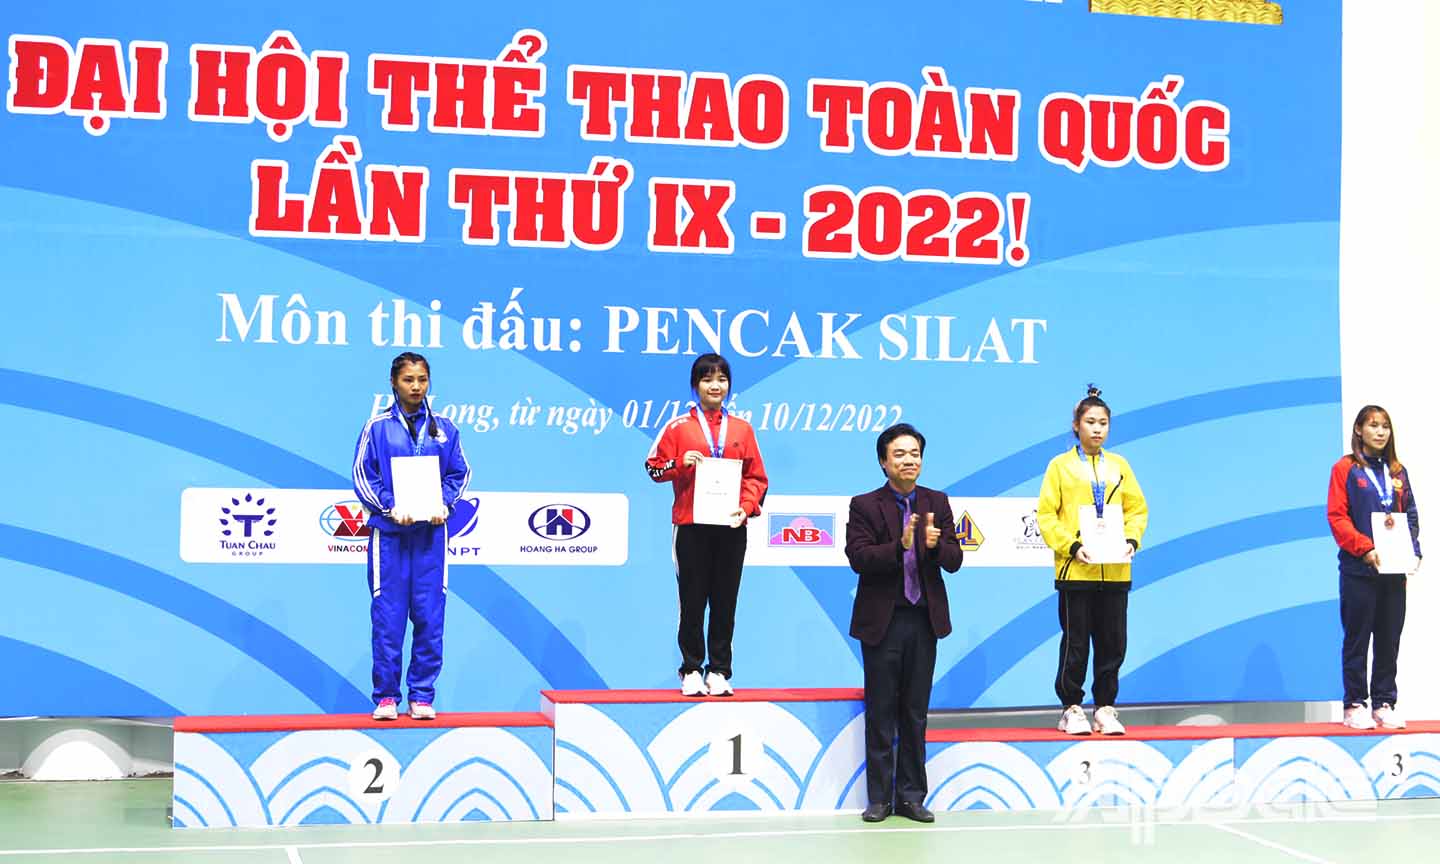 VĐV Trang Hồng My (áo vàng) đoạt HCĐ ở hạng cân 50 kg.